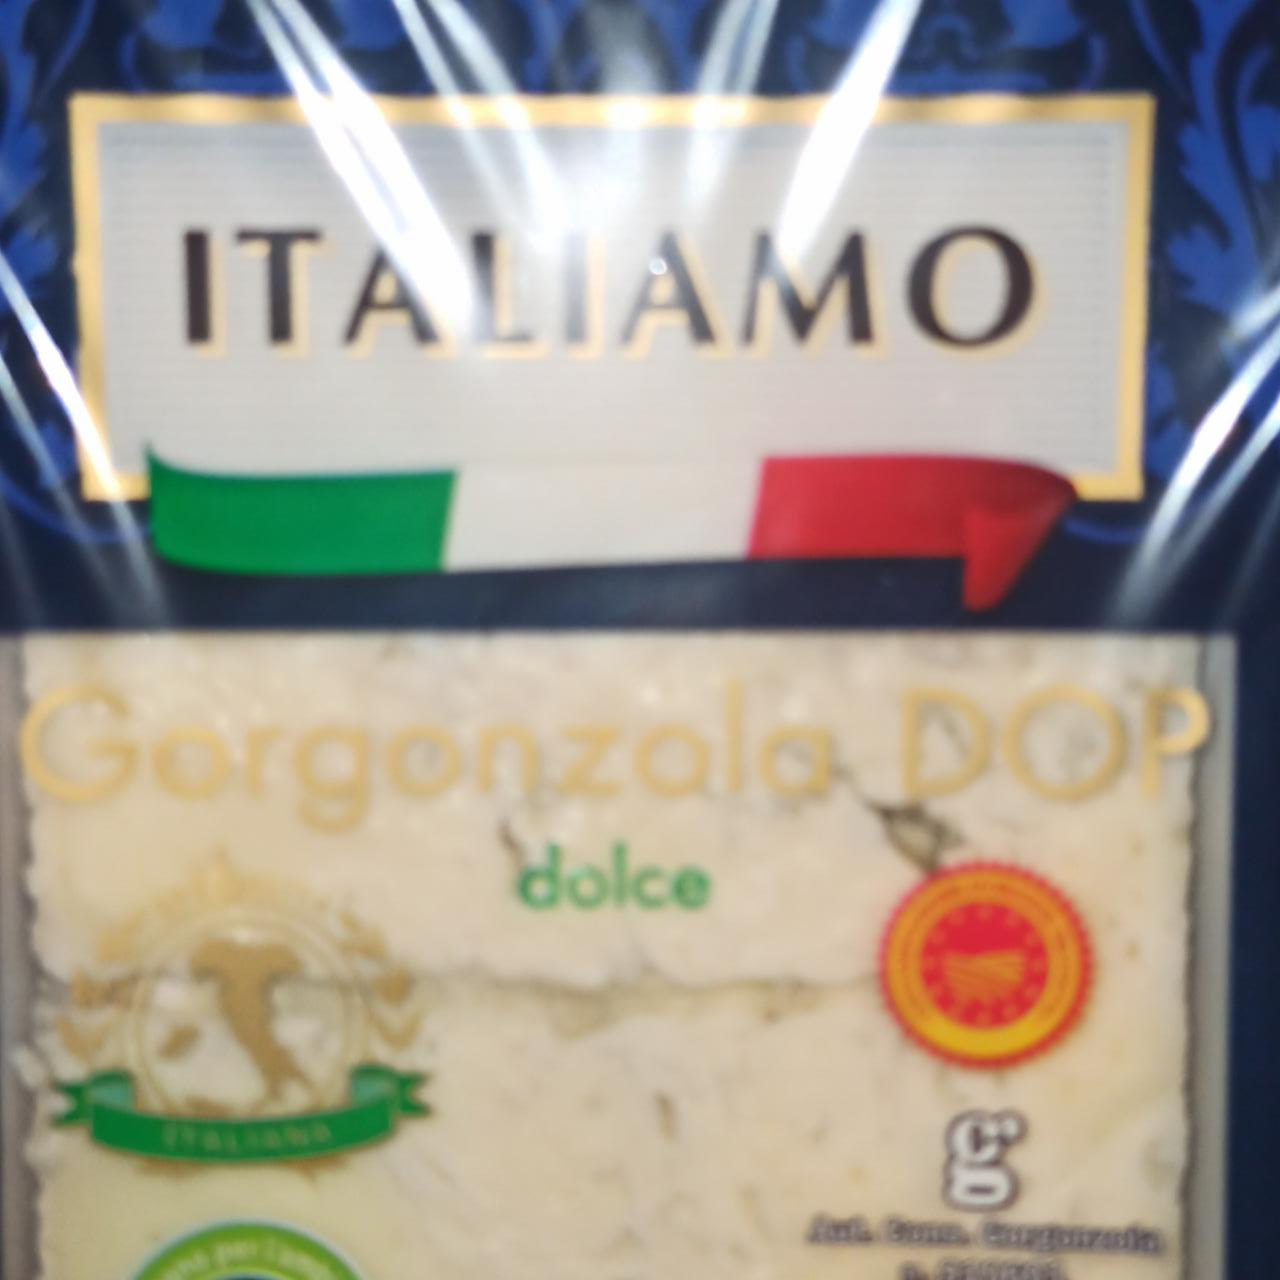 Zdjęcia - Gorgonzola DOP dolce ITALIAMO